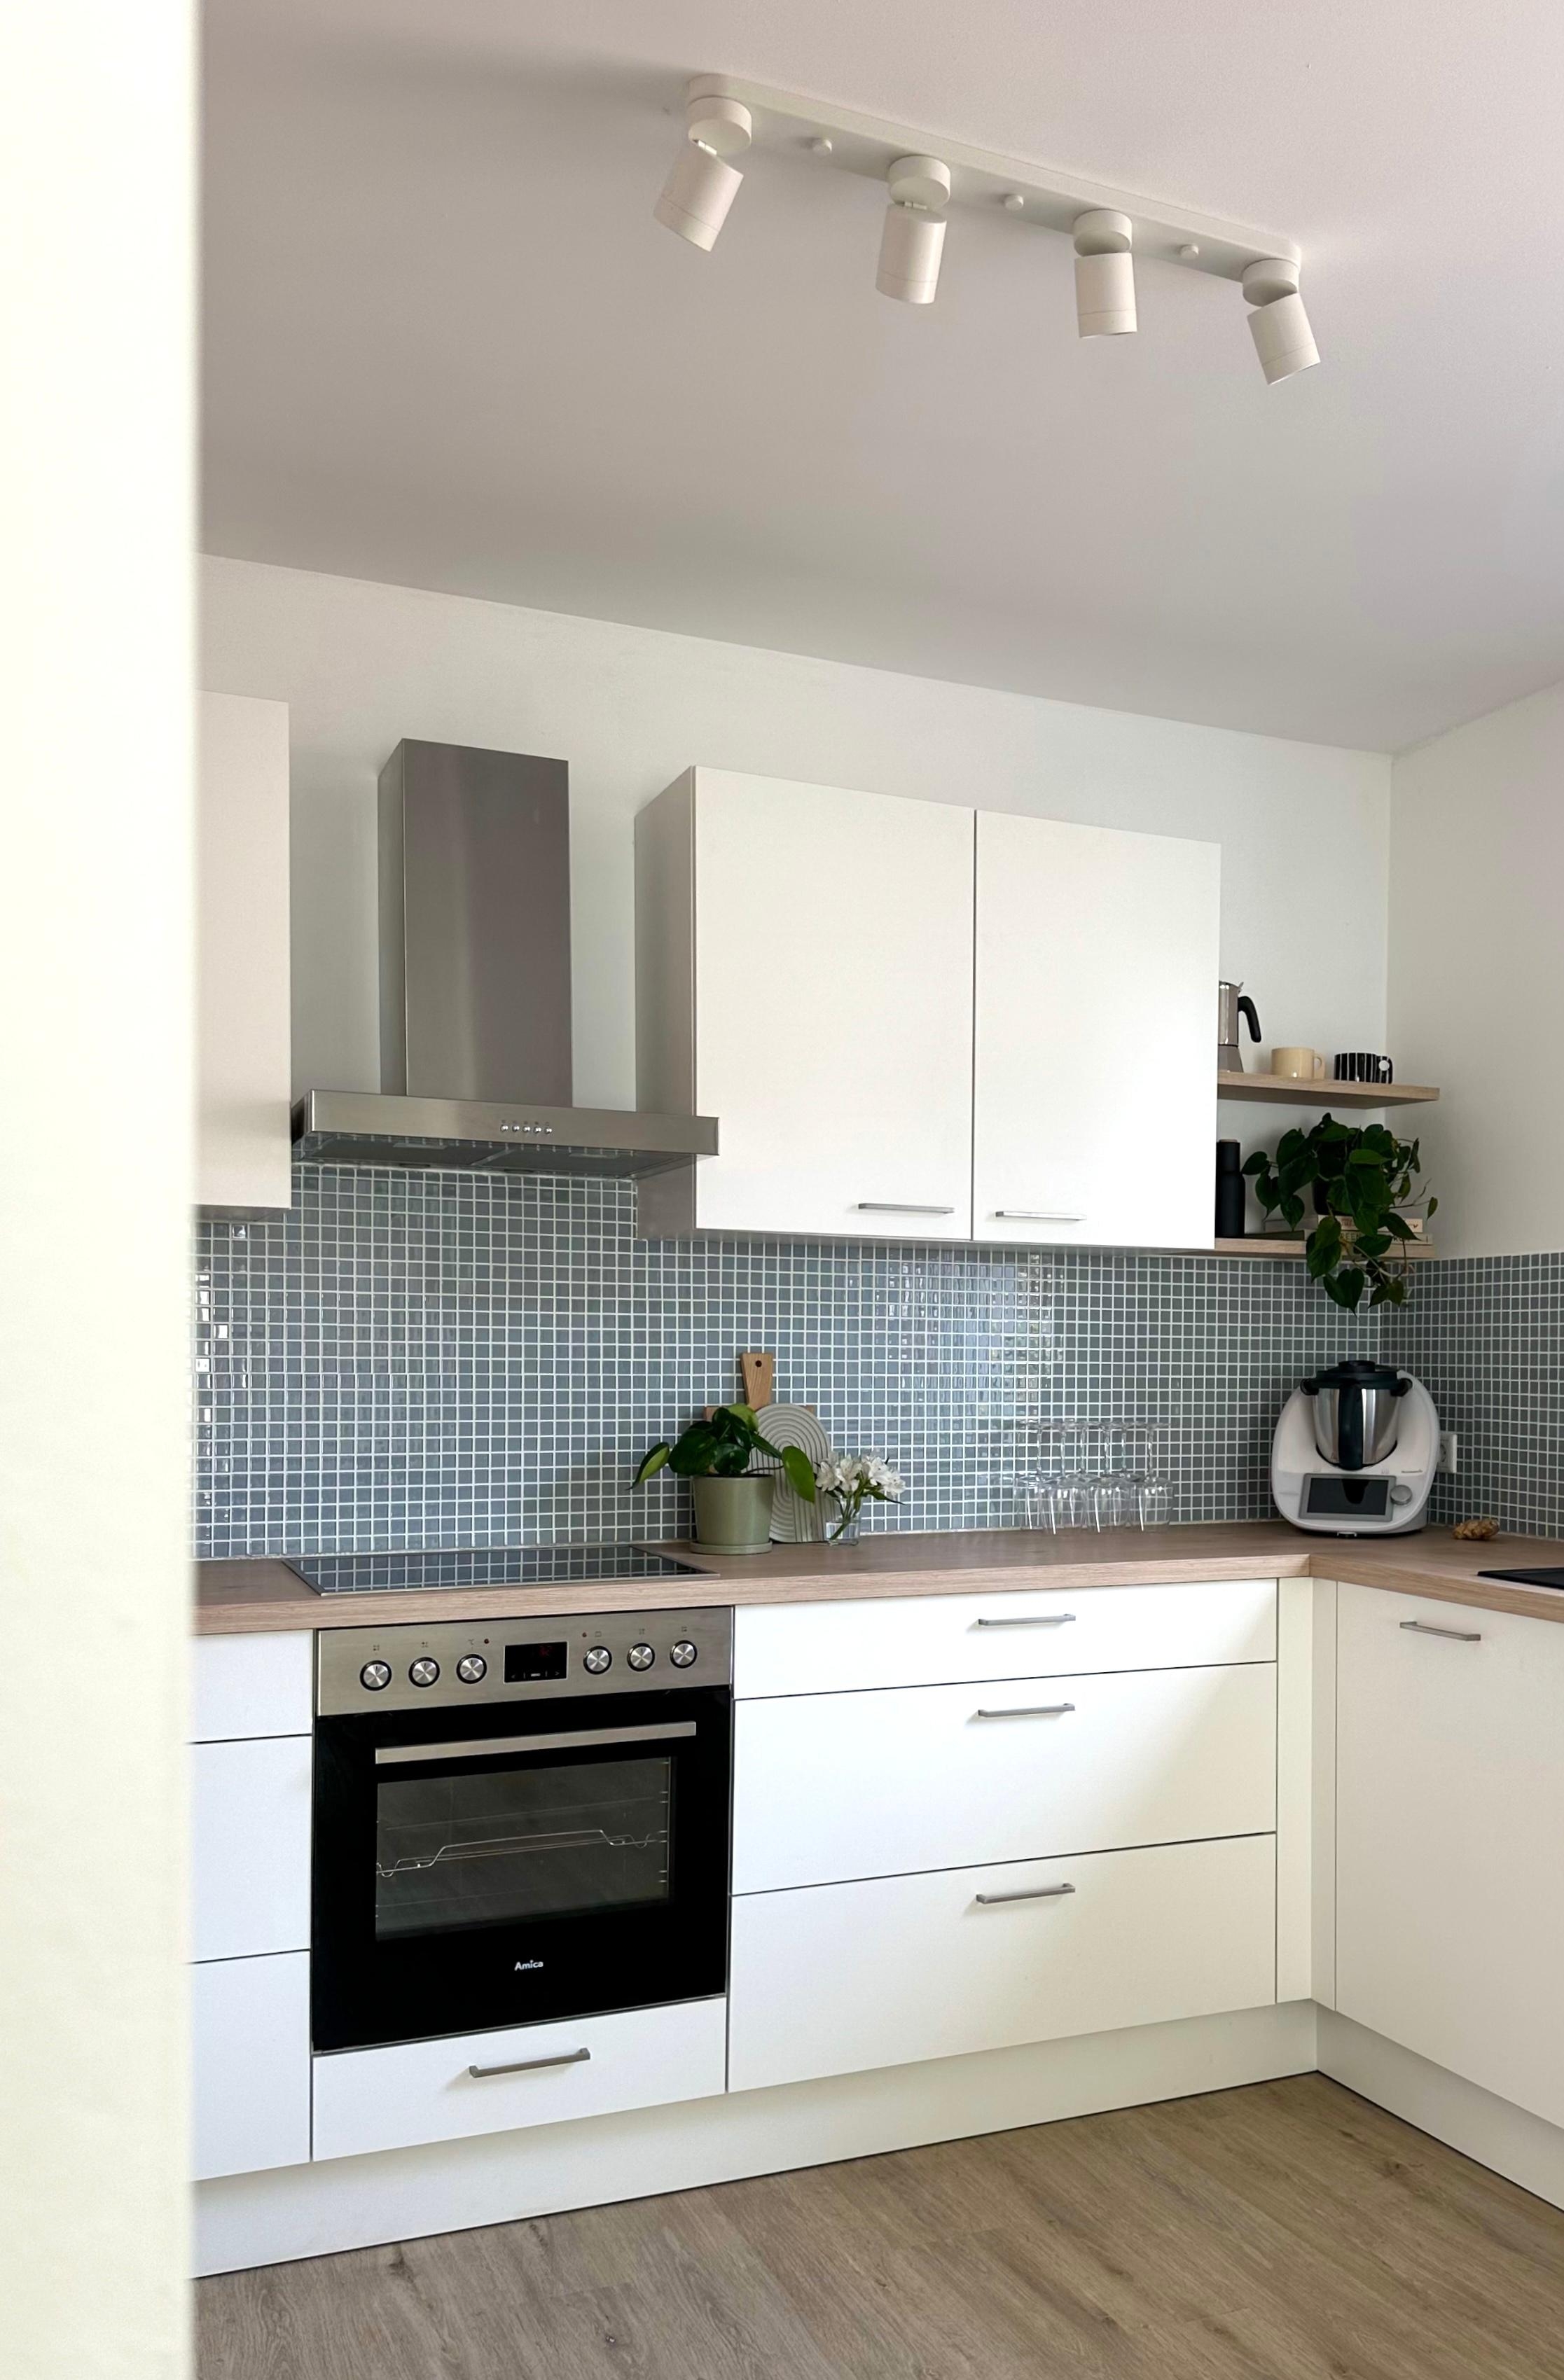 Küche 3/3 #küche #weißeküche #fliesenspiegel #mosaikfliesen #küchenideen #küchendeko #küchenliebe #couchliebt 